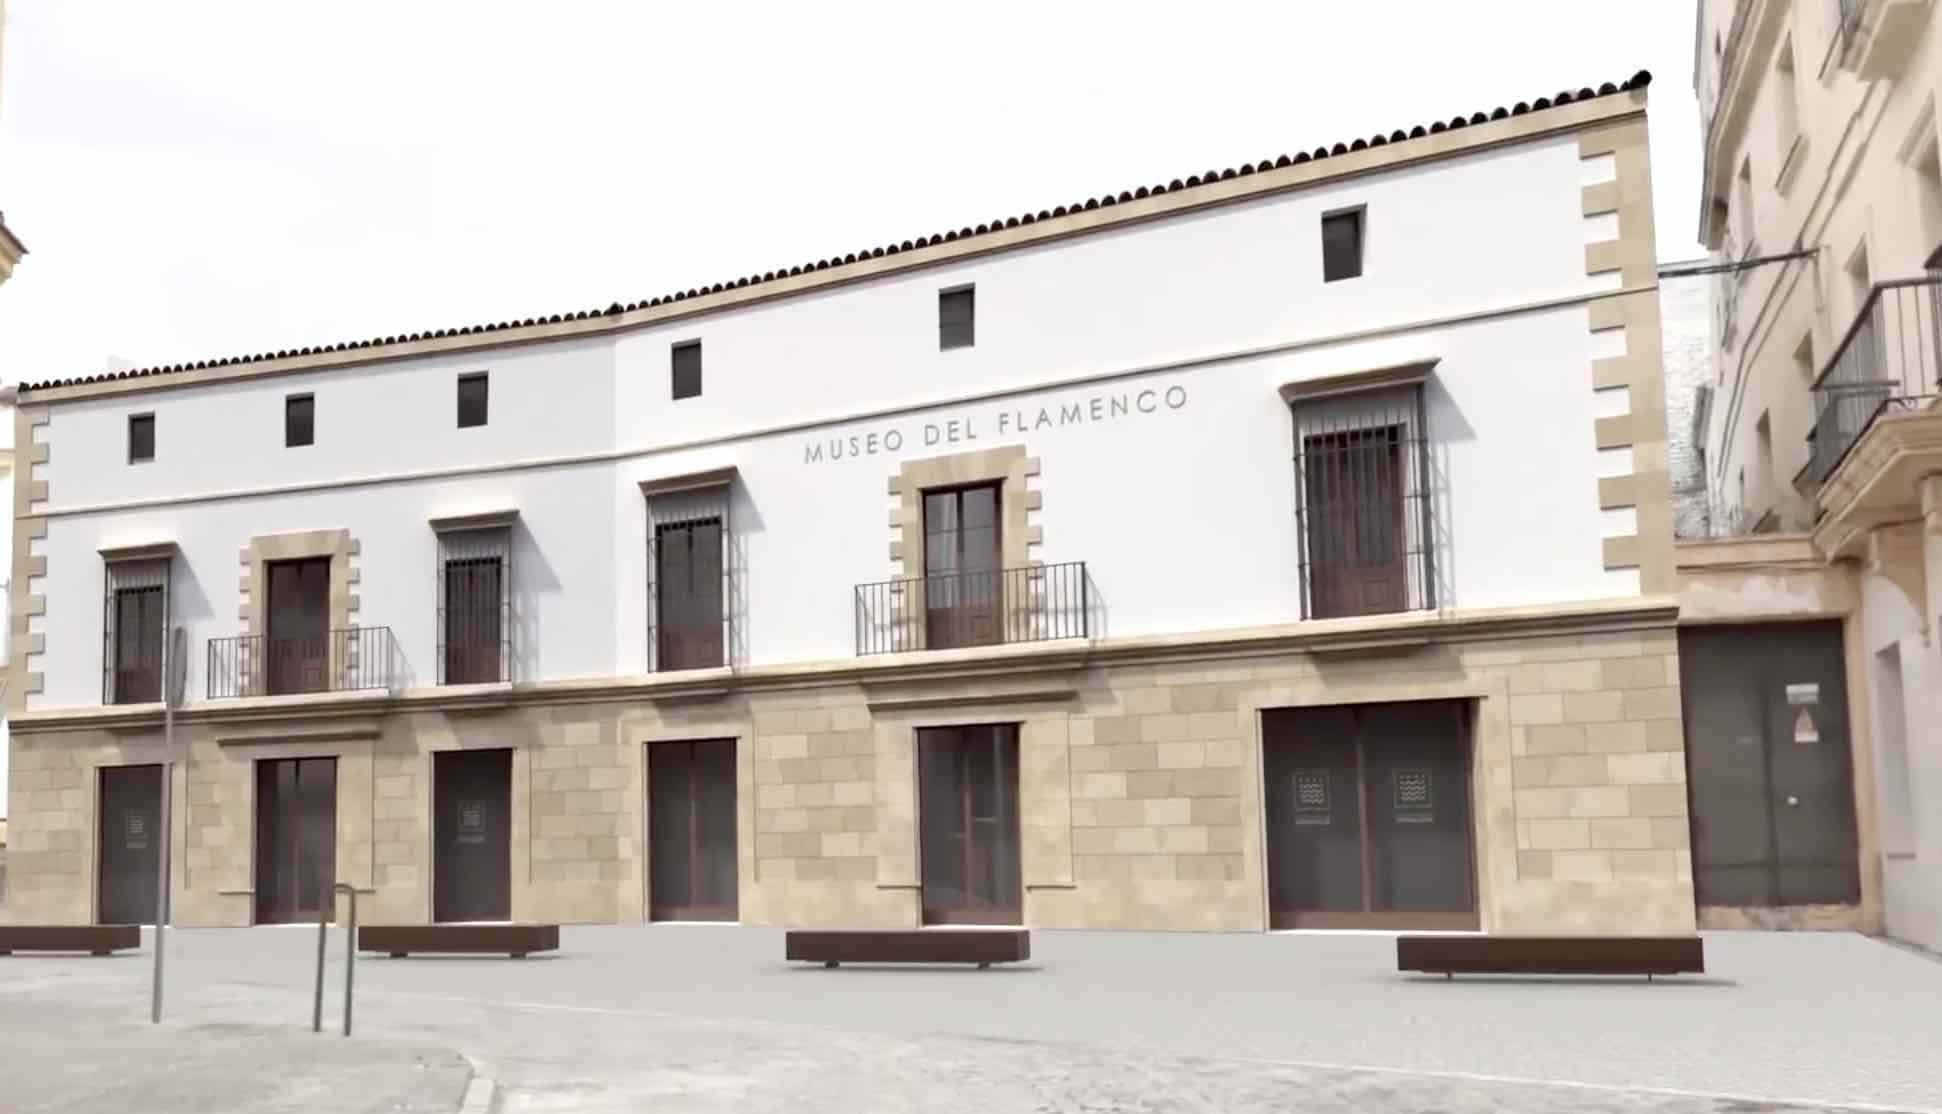 Recreación virtual del Museo del Flamenco de Andalucía, visto de la calle Barranco, en plataforma única.